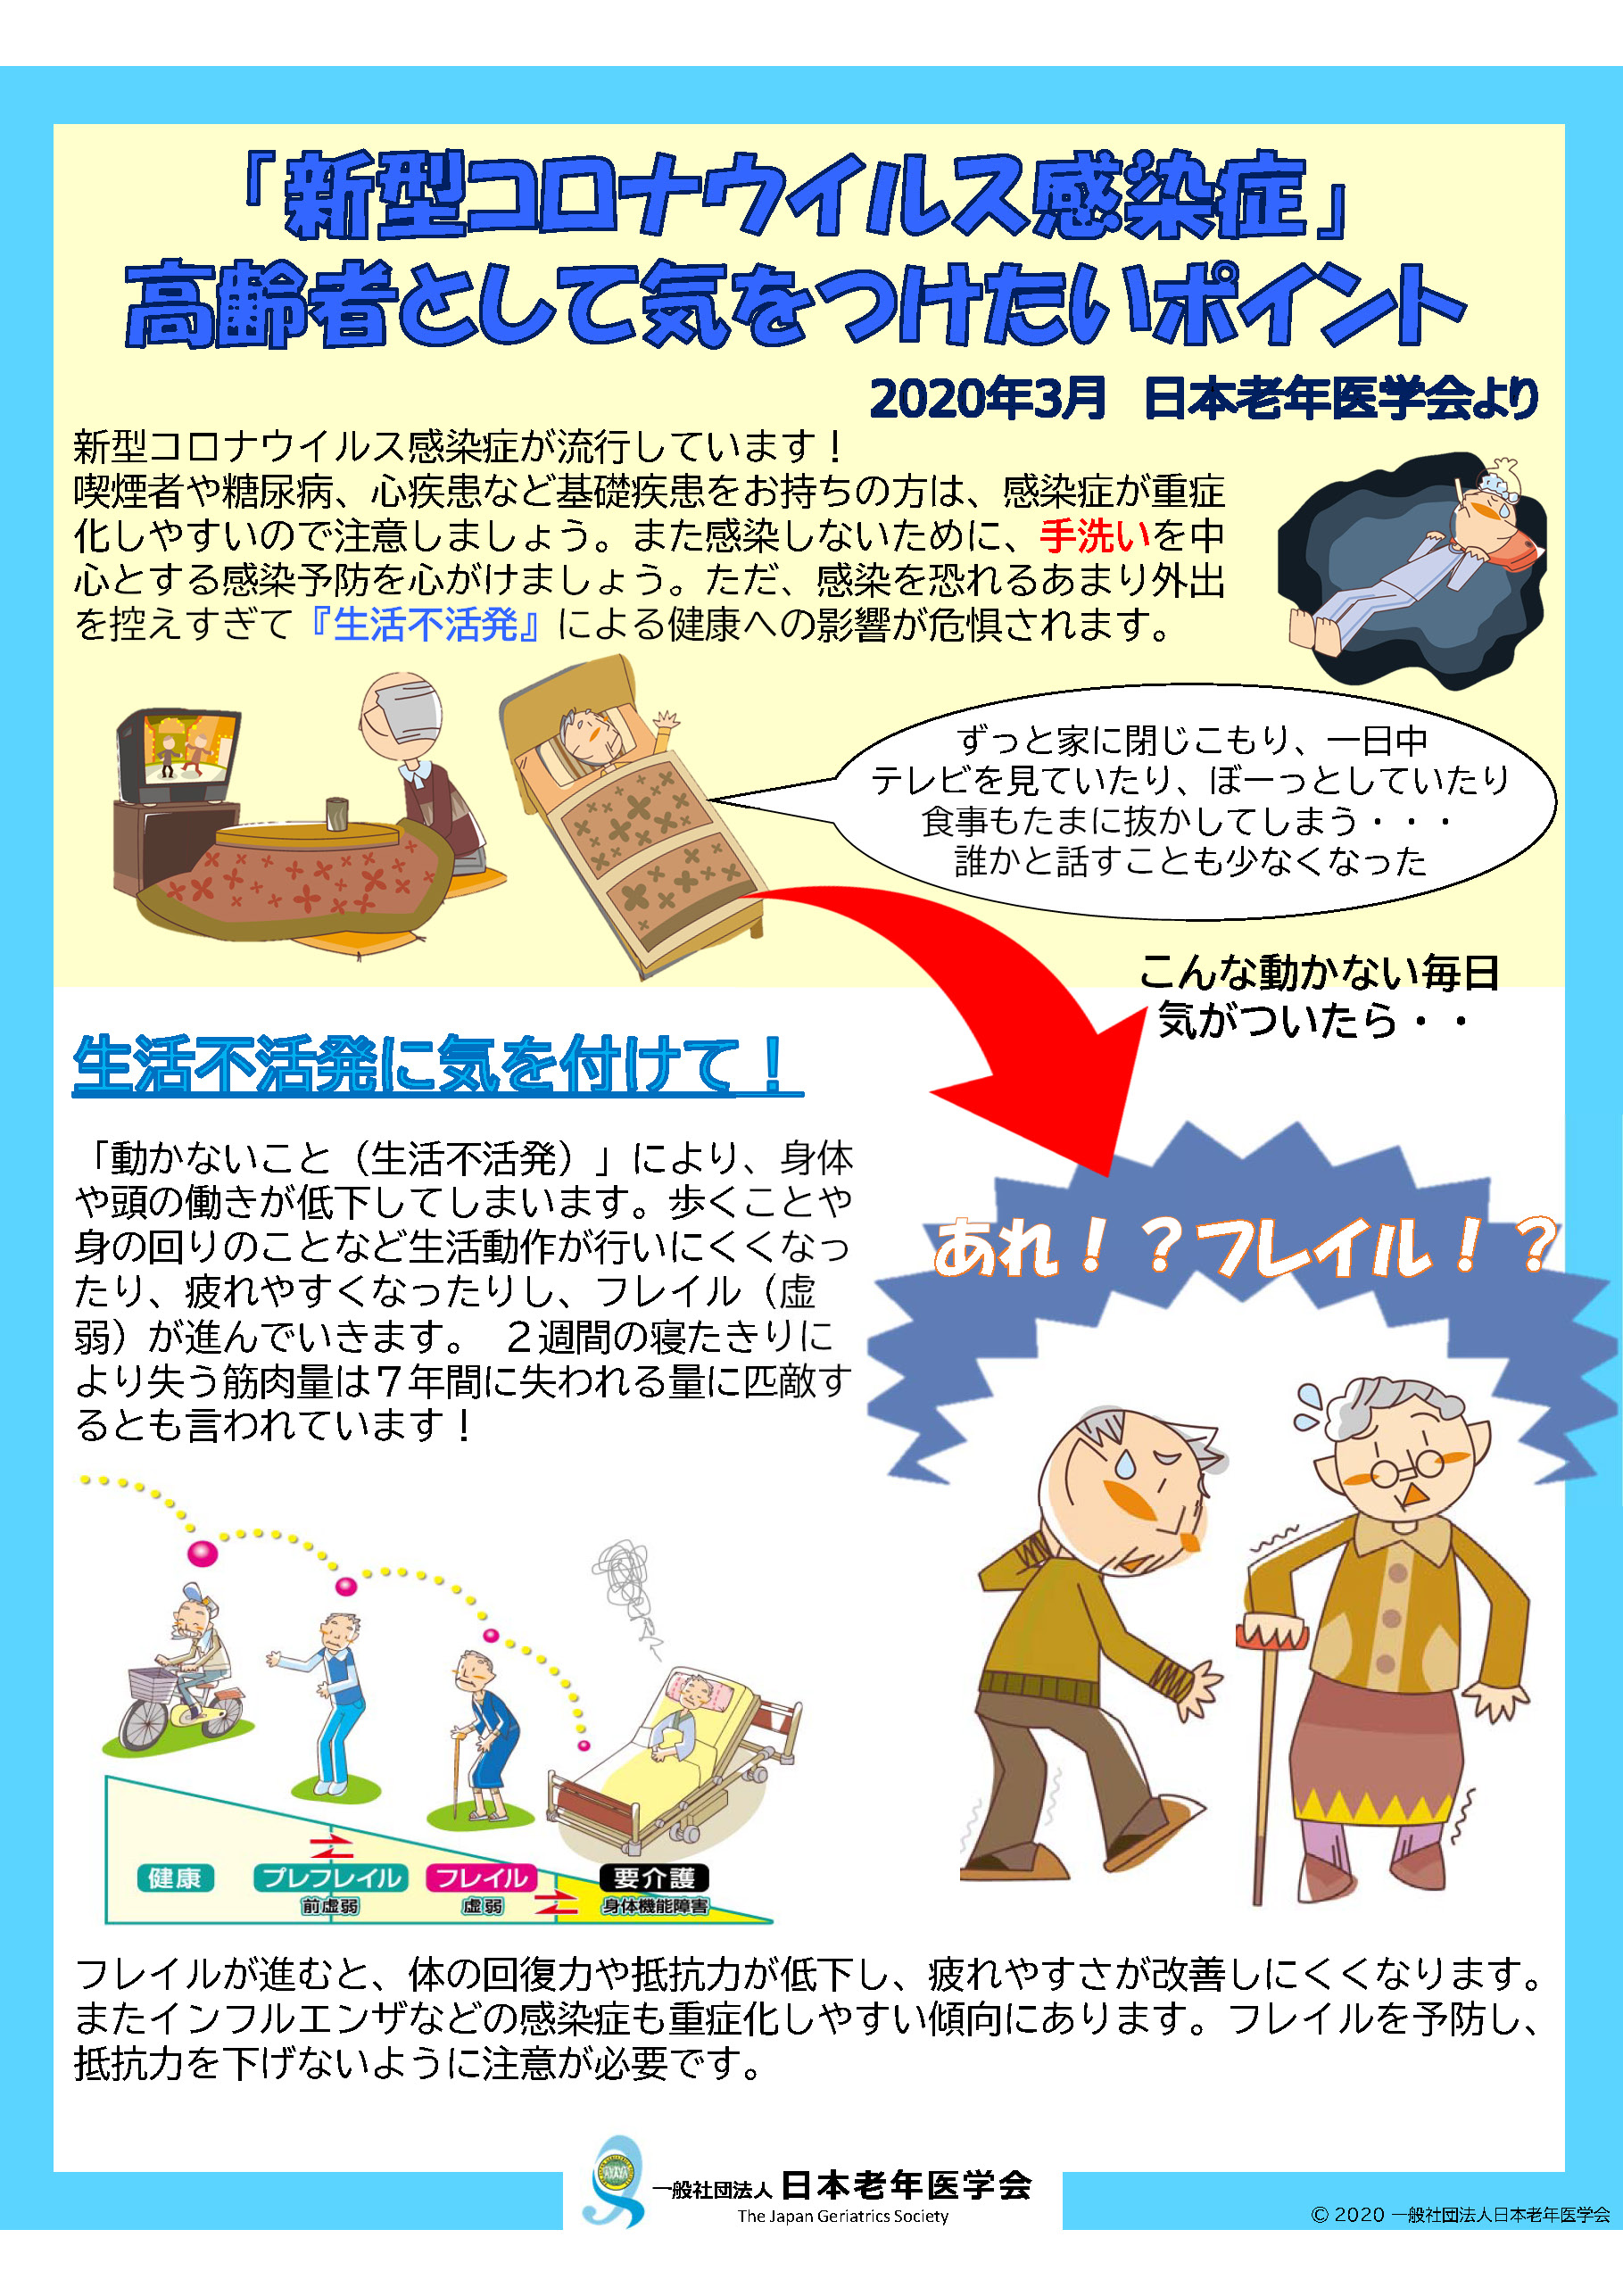 「新型コロナウイルス感染症」 高齢者として気をつけたいポイント - 日本老年医学会ホームページ